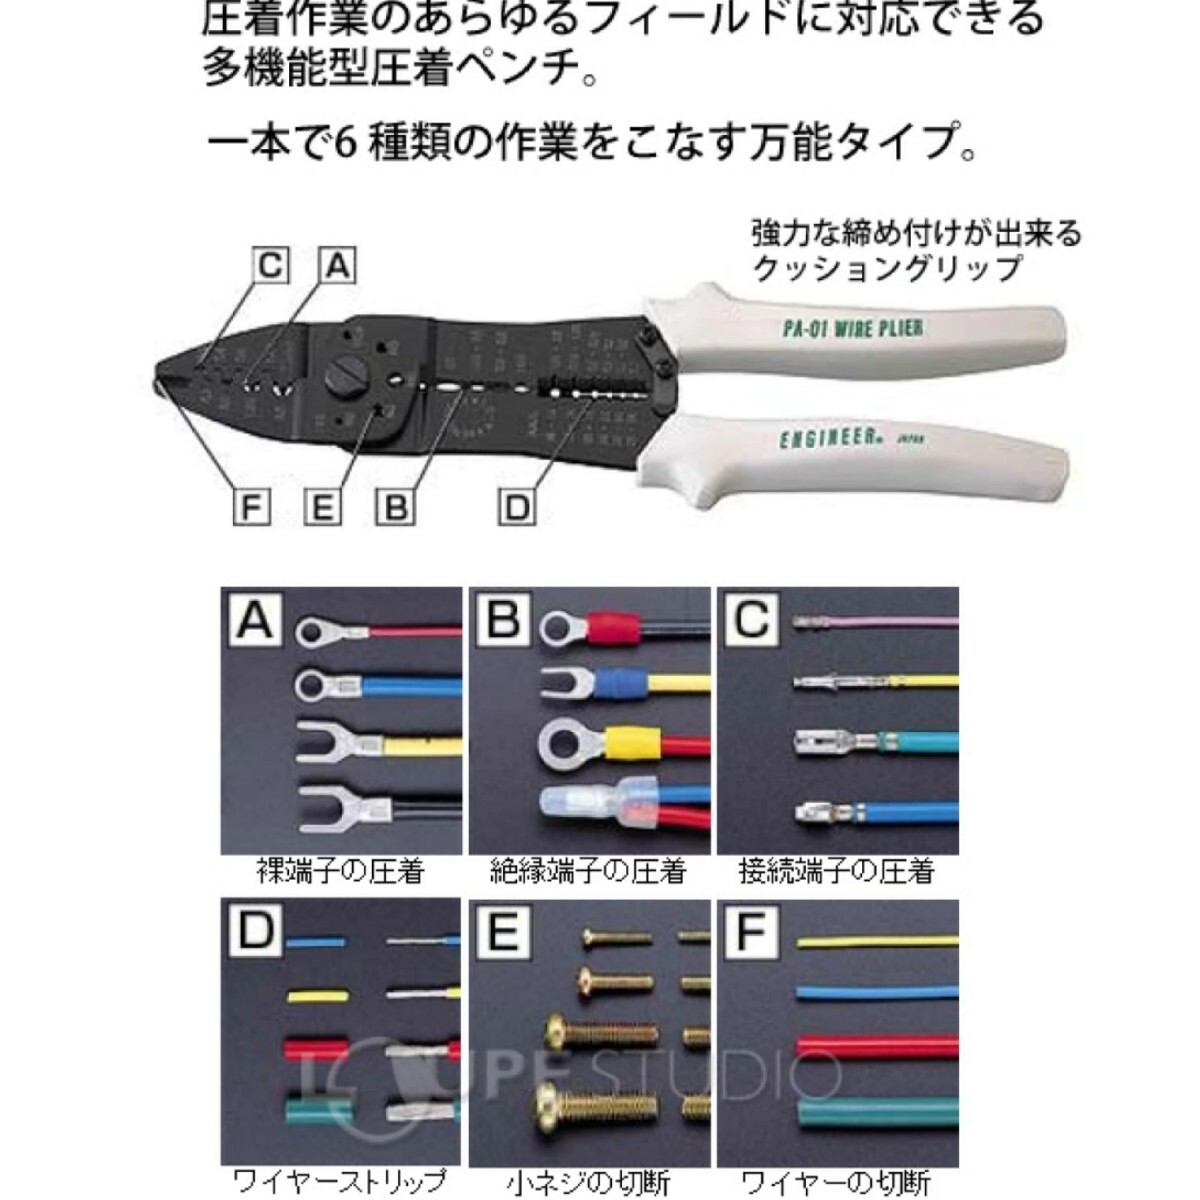  большой индустрия предмет распроданный очень редкий редкостный в это время товар легкий в использовании инженер код плоскогубцы PA-01 сделано в Японии -тактный риппер плоскогубцы обжимные клещи инструмент 